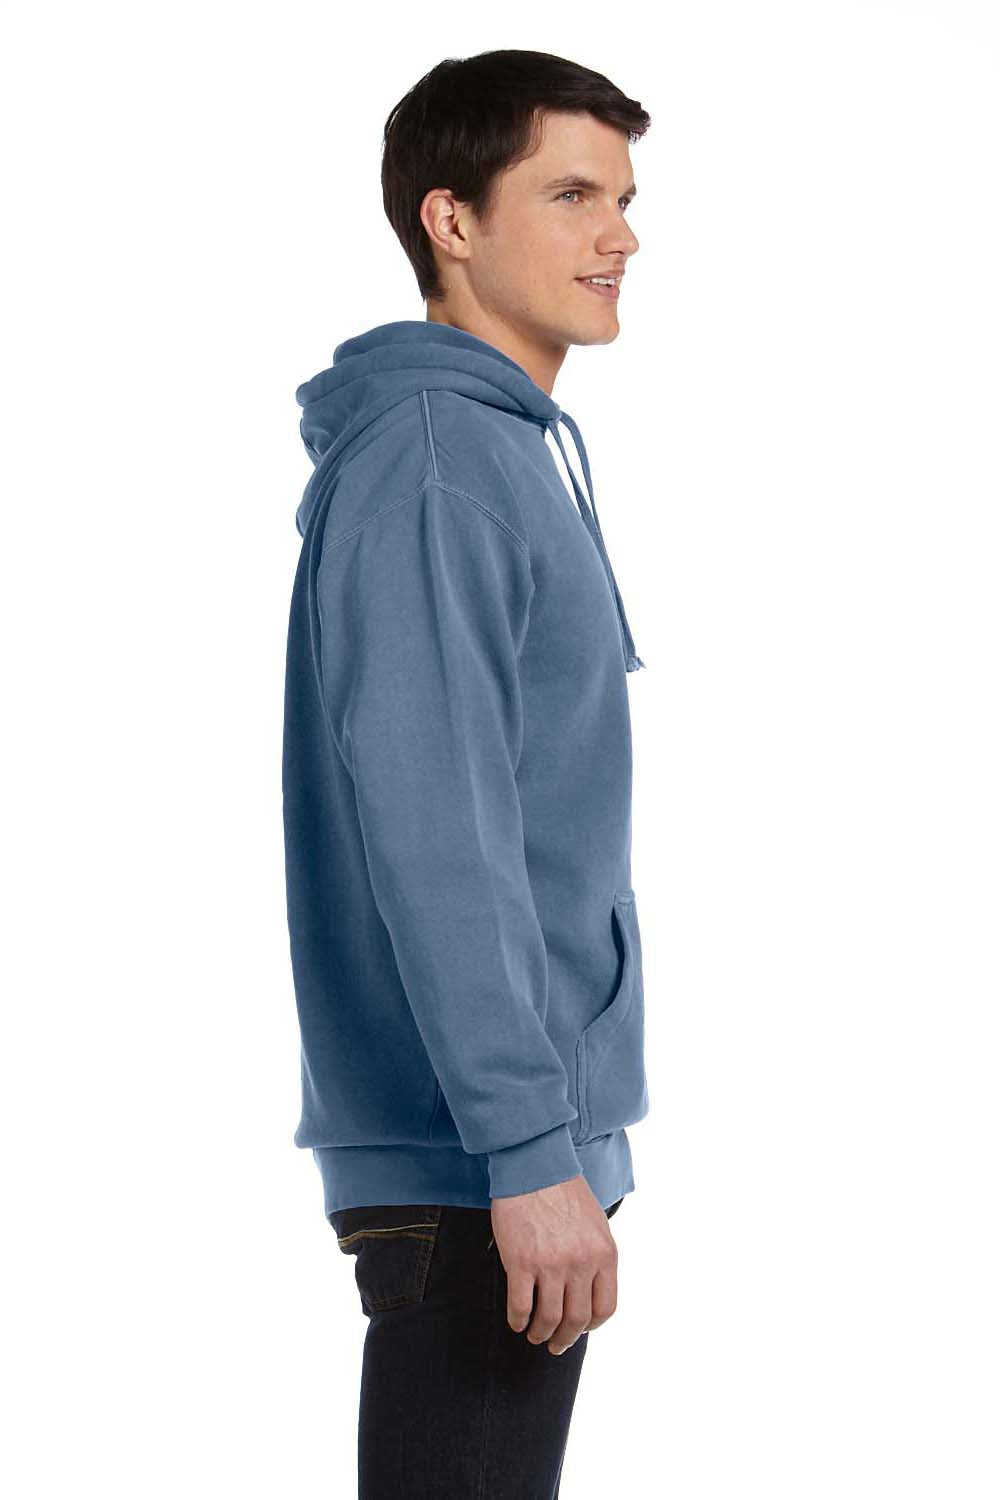 Comfort Colors 1567 Mens Hooded Sweatshirt Hoodie Blue Jean Side